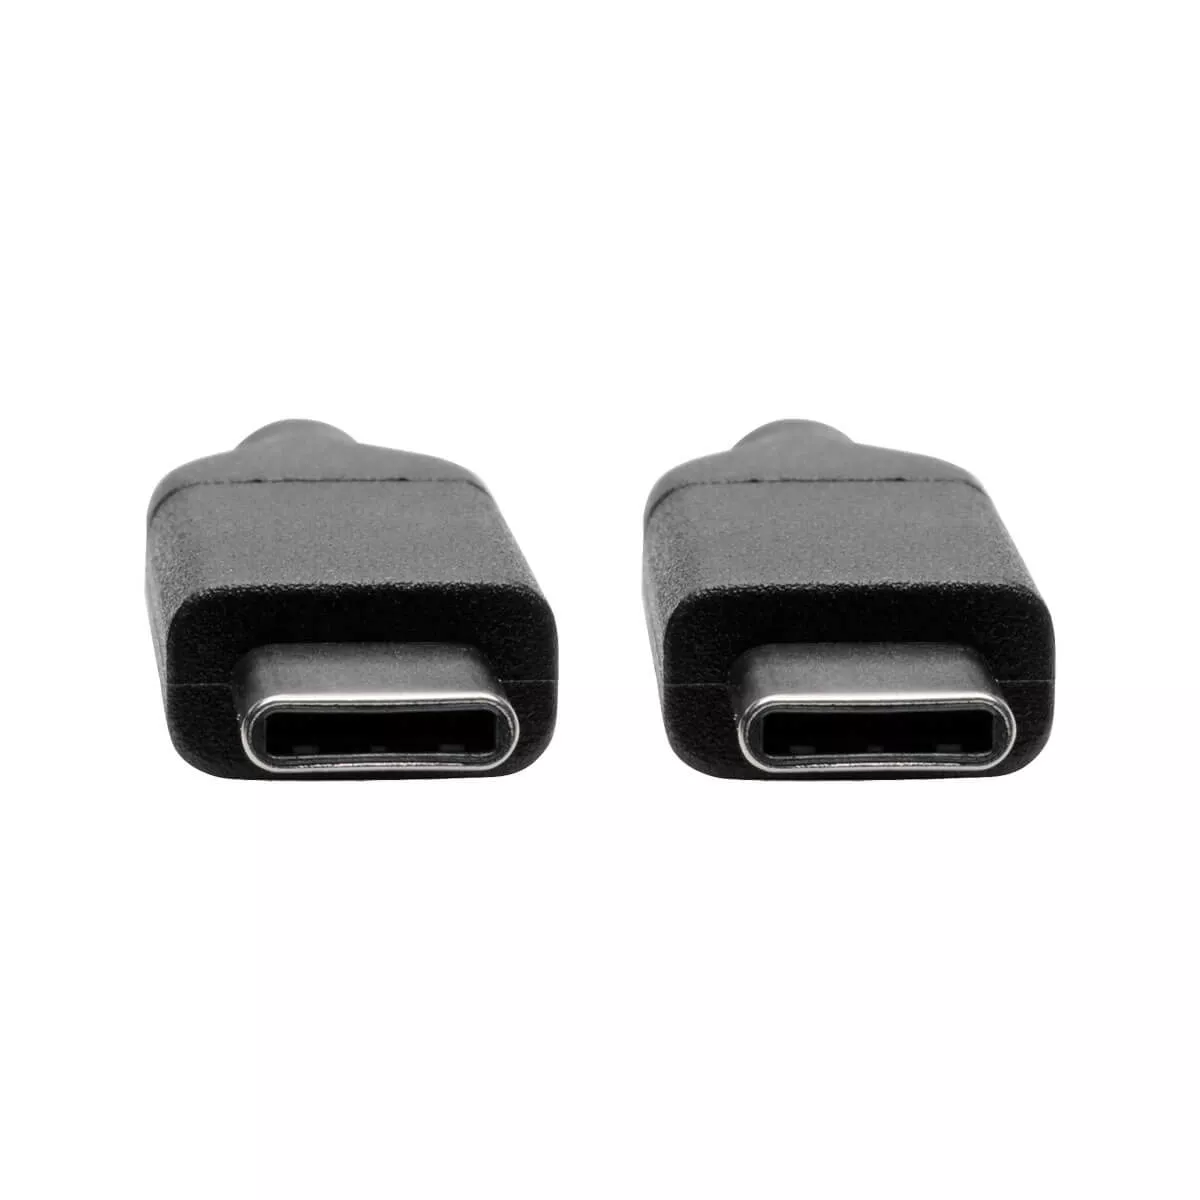 Achat EATON TRIPPLITE USB-C Cable M/M - USB 2.0 sur hello RSE - visuel 3